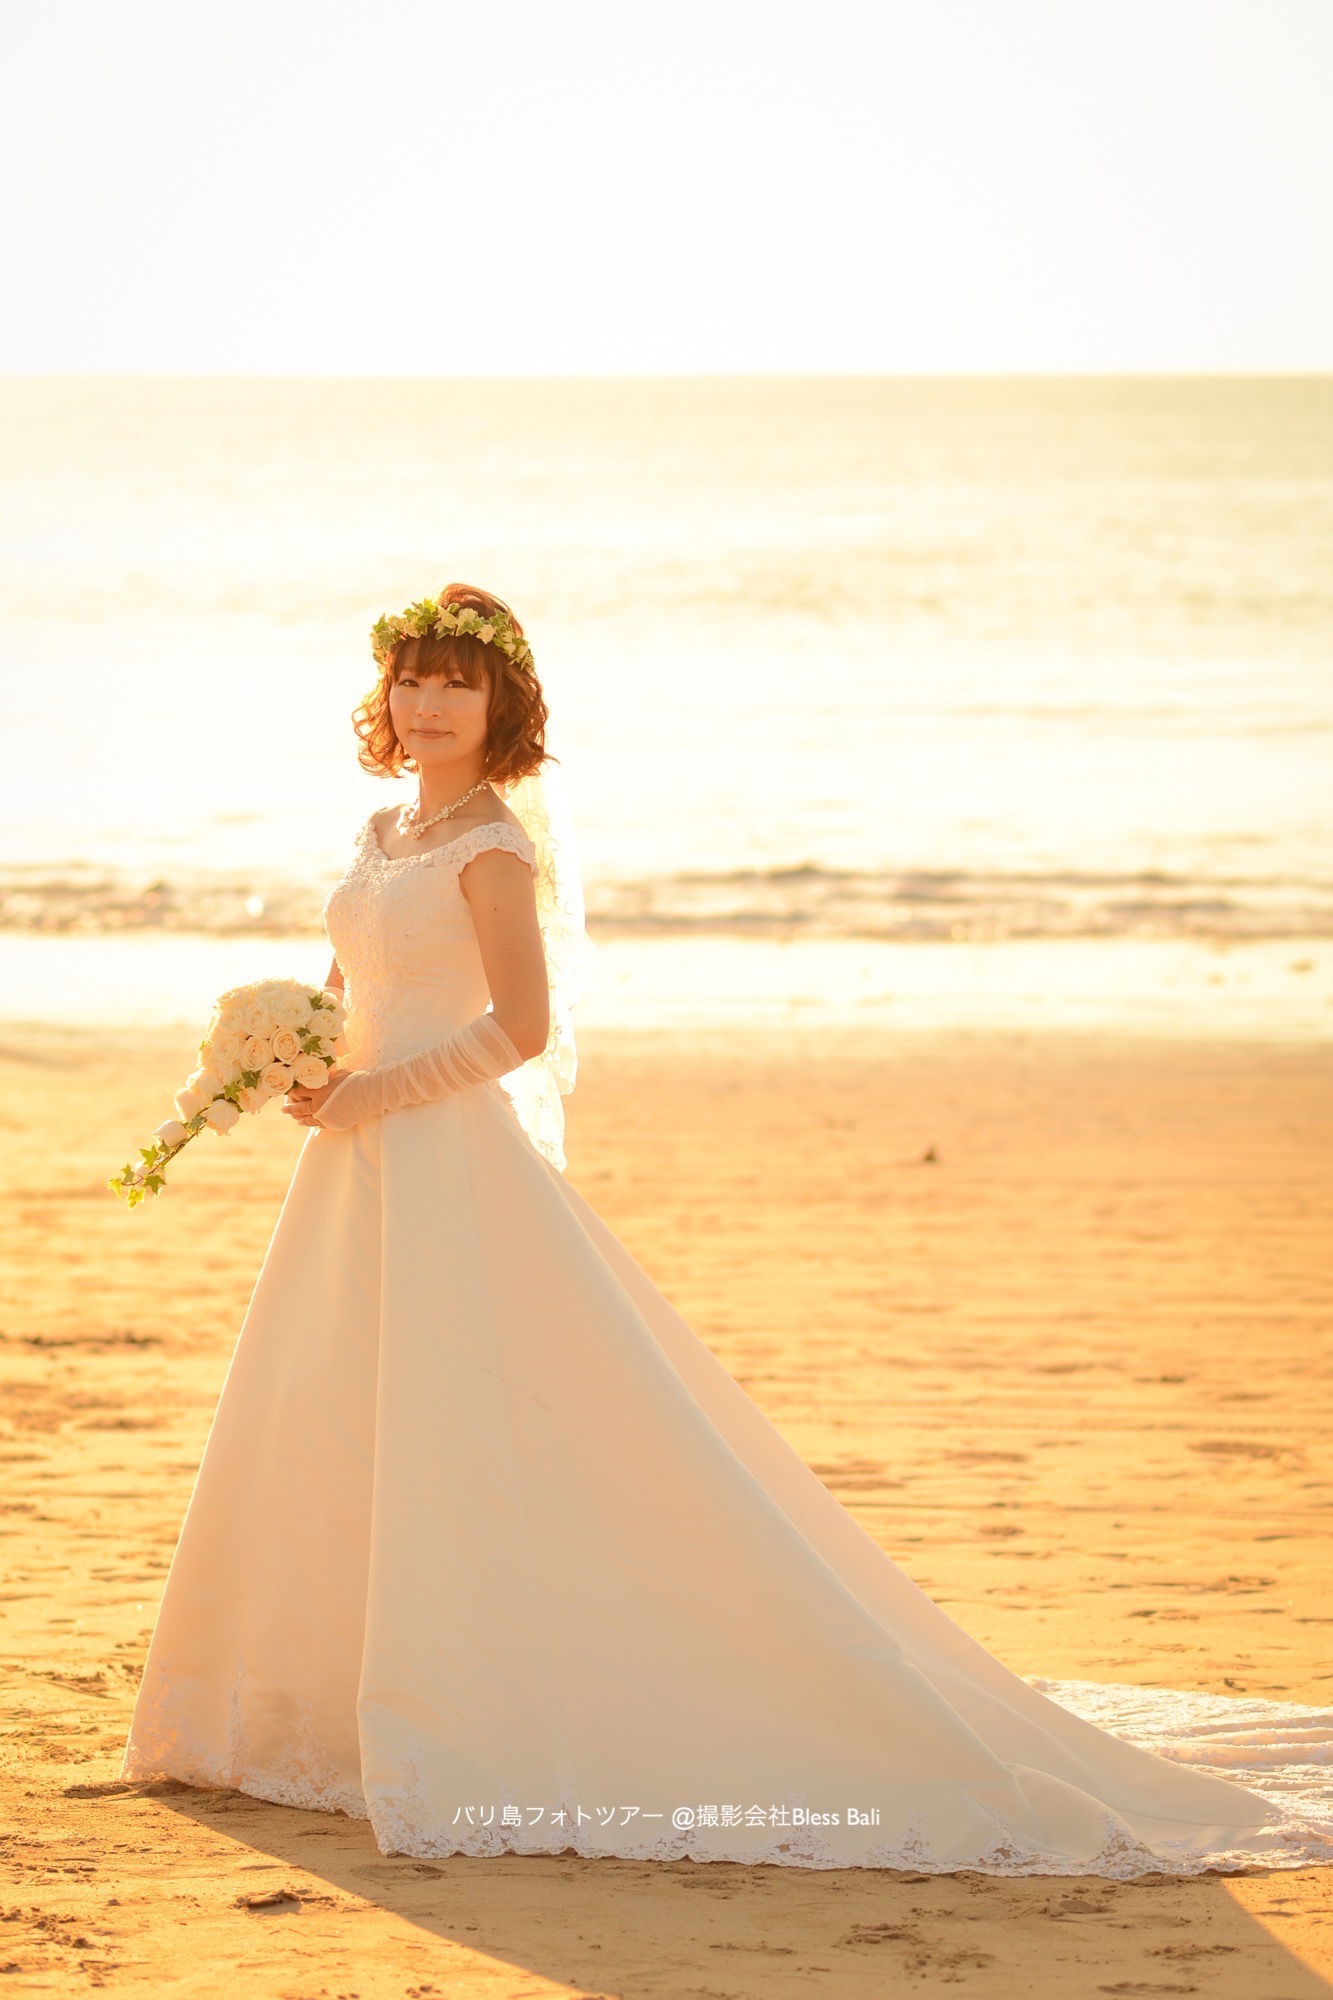 バリ島サンセットの中に立つ花嫁様